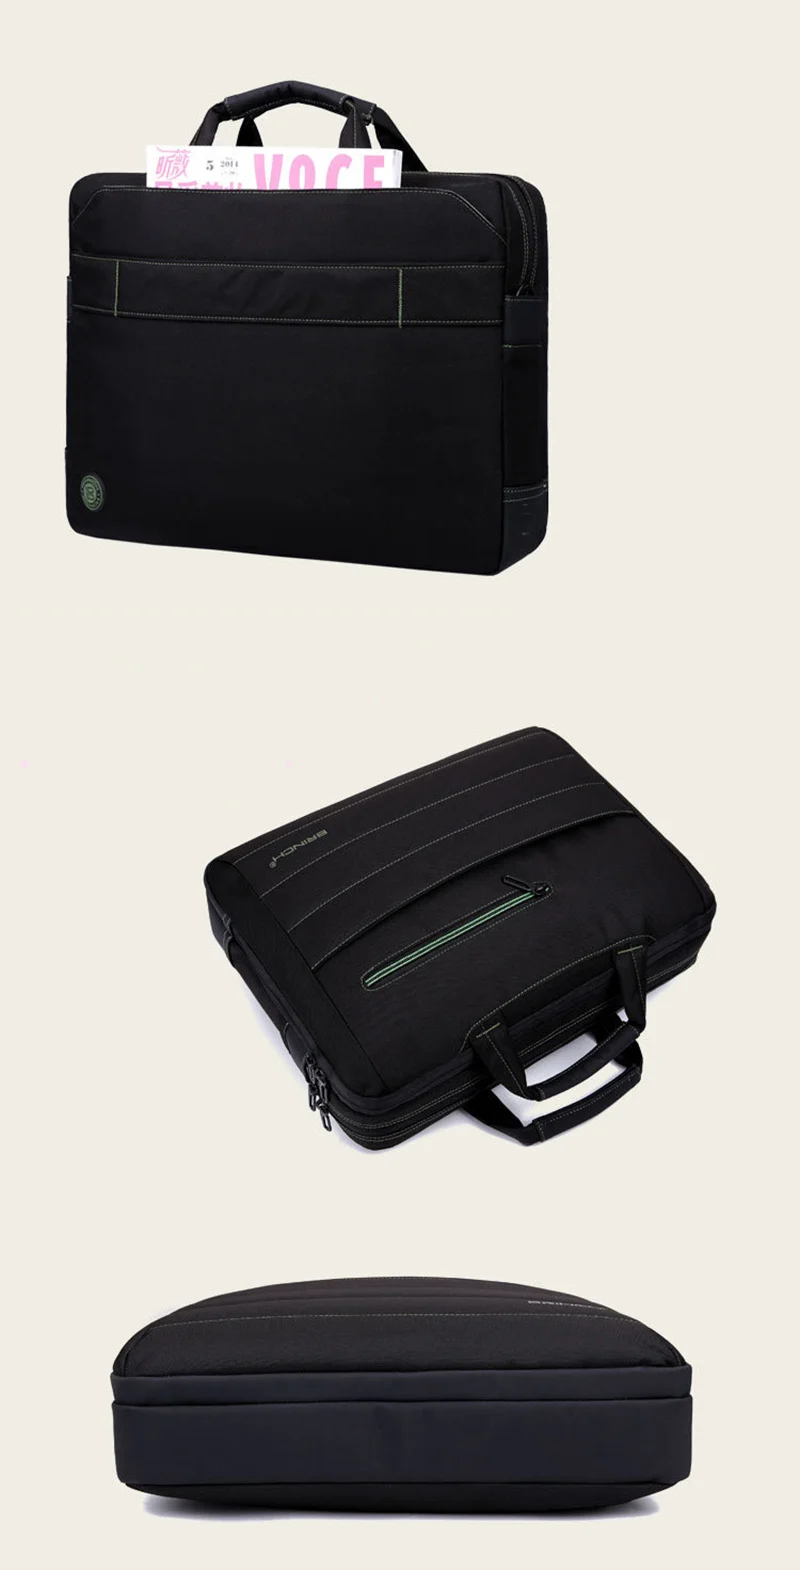 Сумка для ноутбука 15,6 17,3 дюймов, водонепроницаемая сумка для ноутбука Macbook Air Pro 15 17 hp Dell, сумка через плечо для компьютера, портфель, сумки